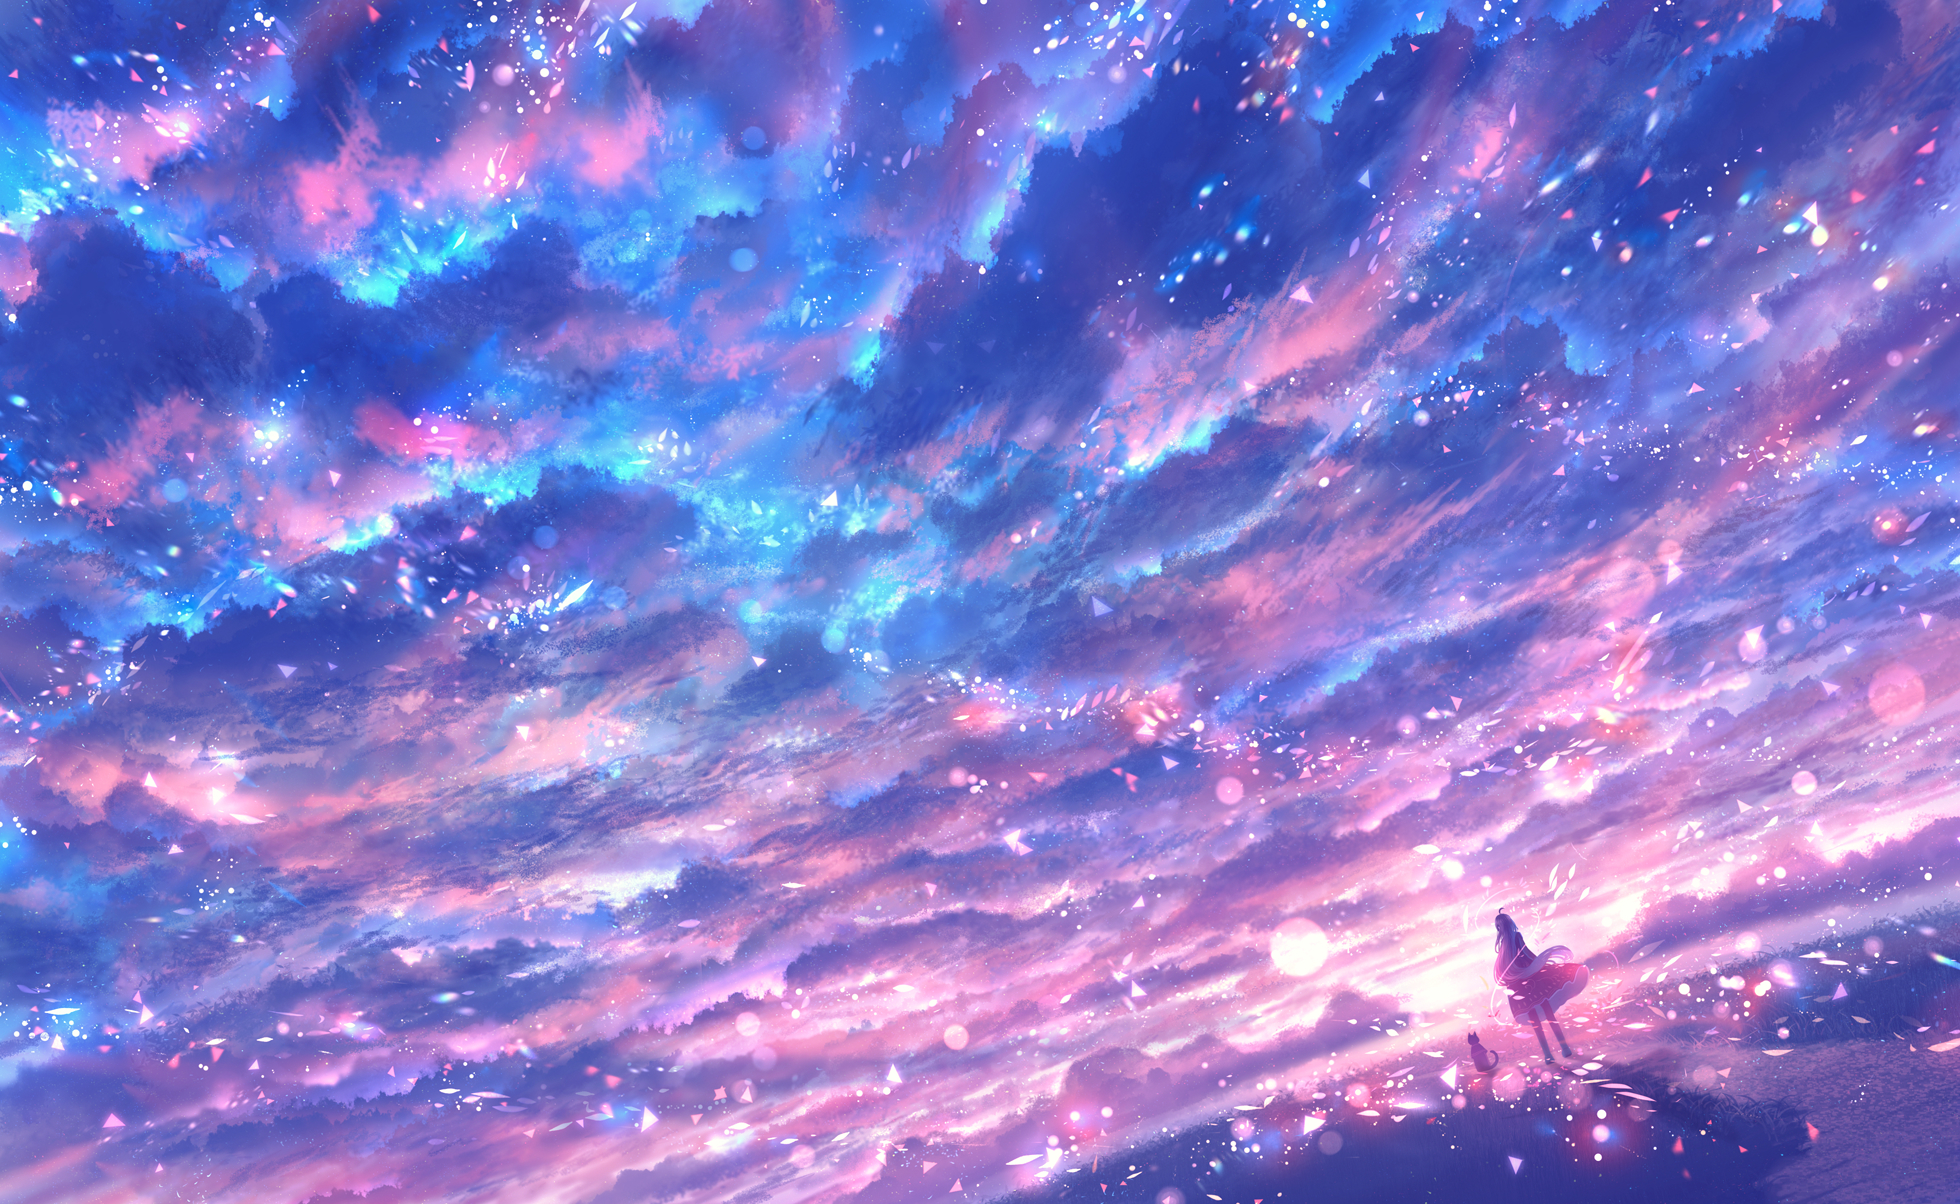 Sky Anime HD Wallpaper chính là điều mà bạn cần để thư giãn và đắm mình vào một thế giới hoàn toàn khác. Hãy đón xem hình ảnh và cùng hưởng thụ cảm giác yên bình khi nhìn những đóa mây trôi.